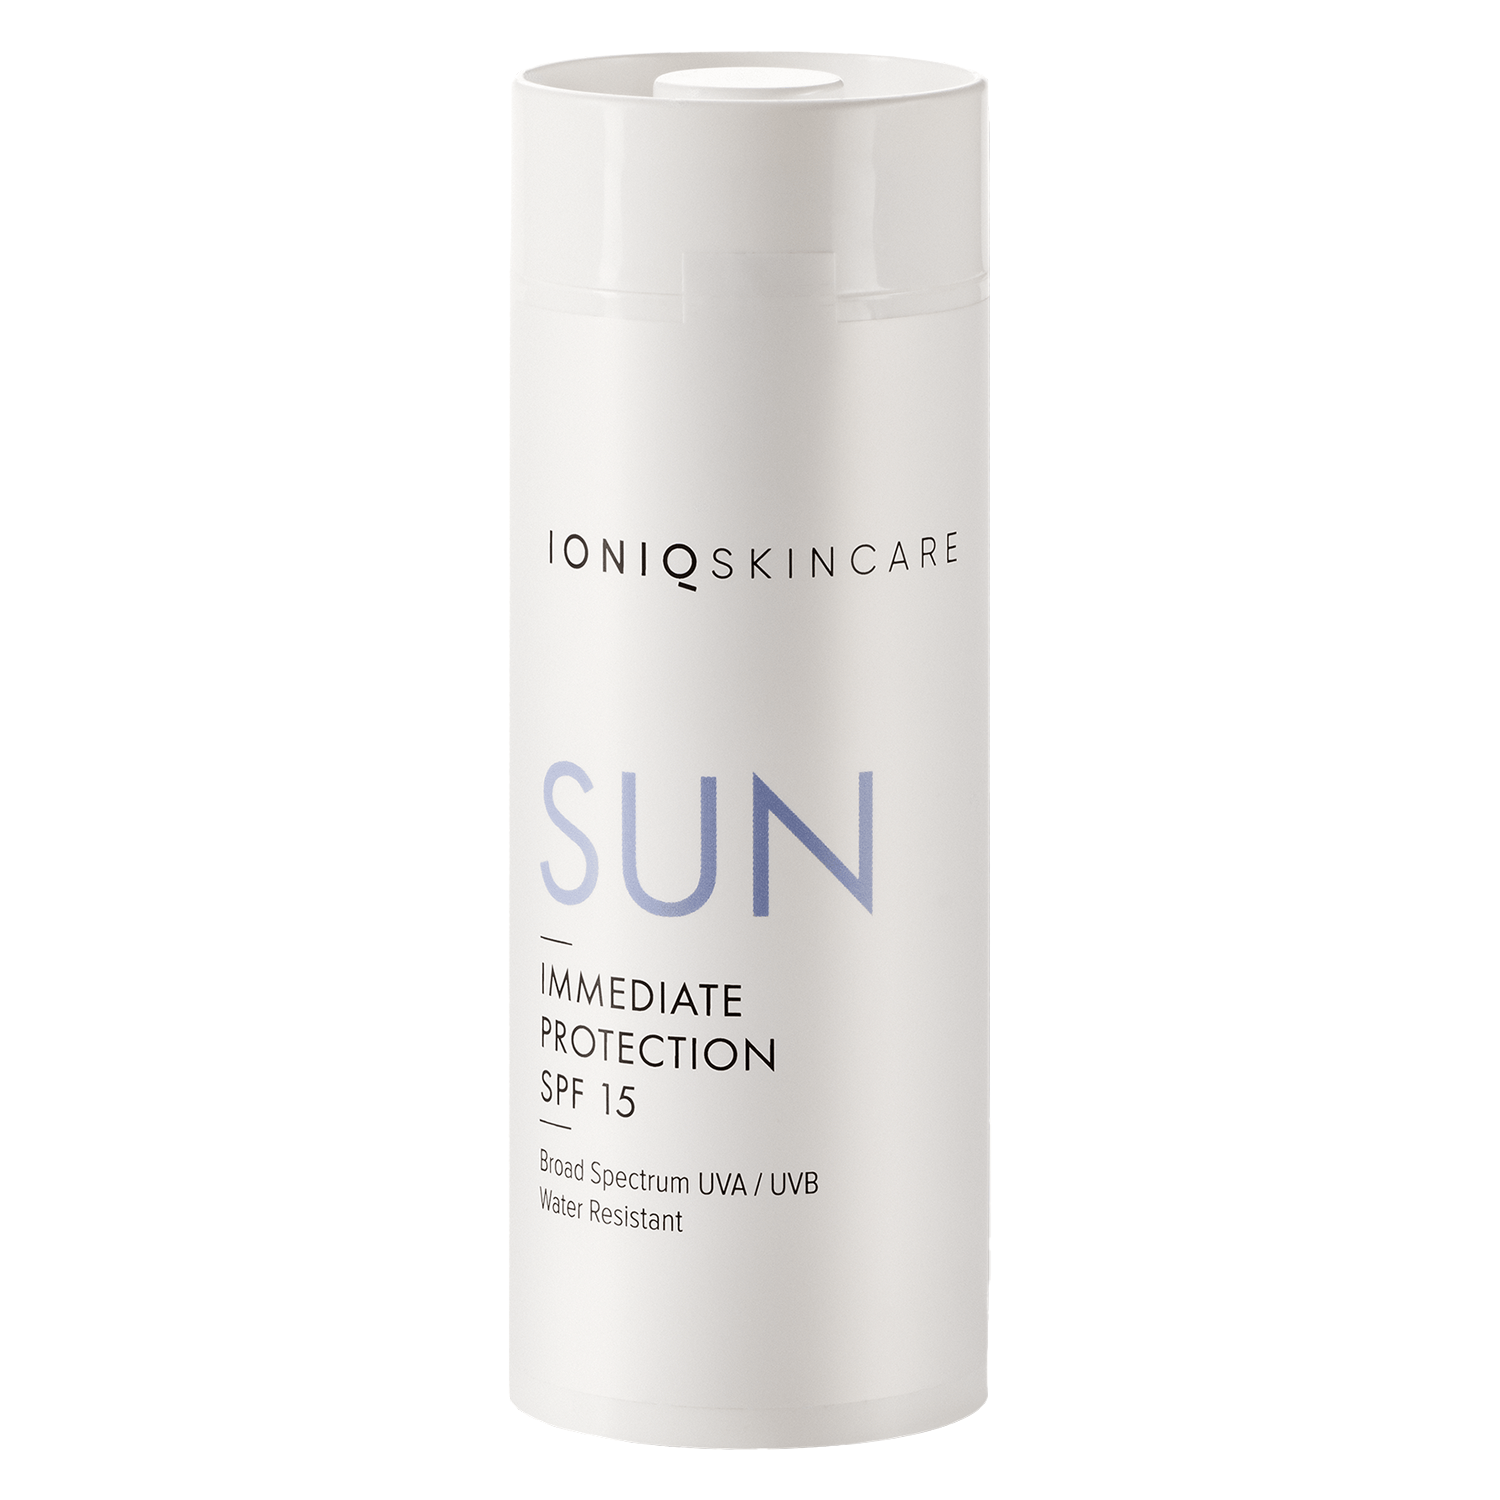 Produktbild von IONIQ Skincare - Sun SPF 15 Kartusche